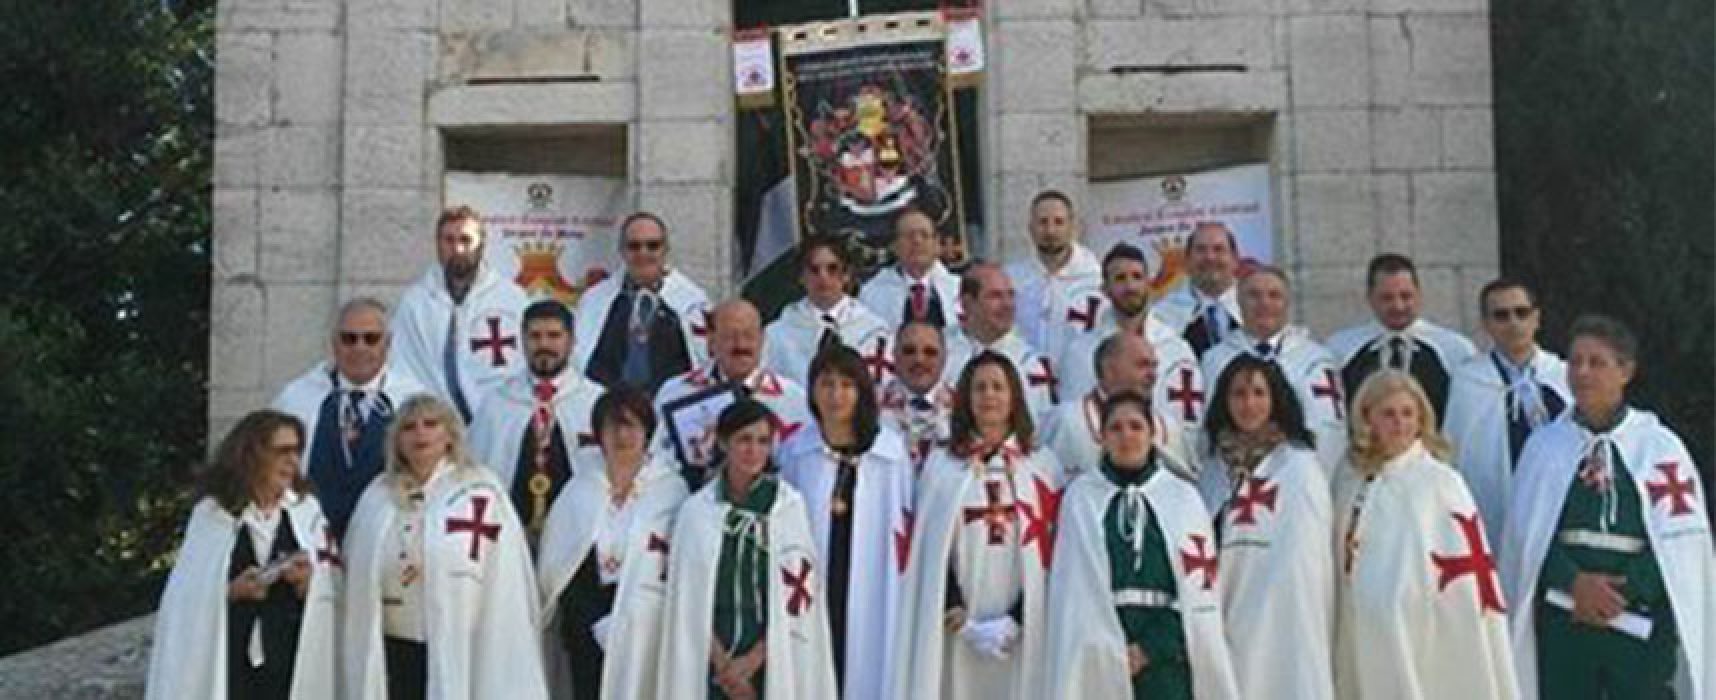 Il Priorato Regionale dei Templari inaugura nuova sede a Bisceglie